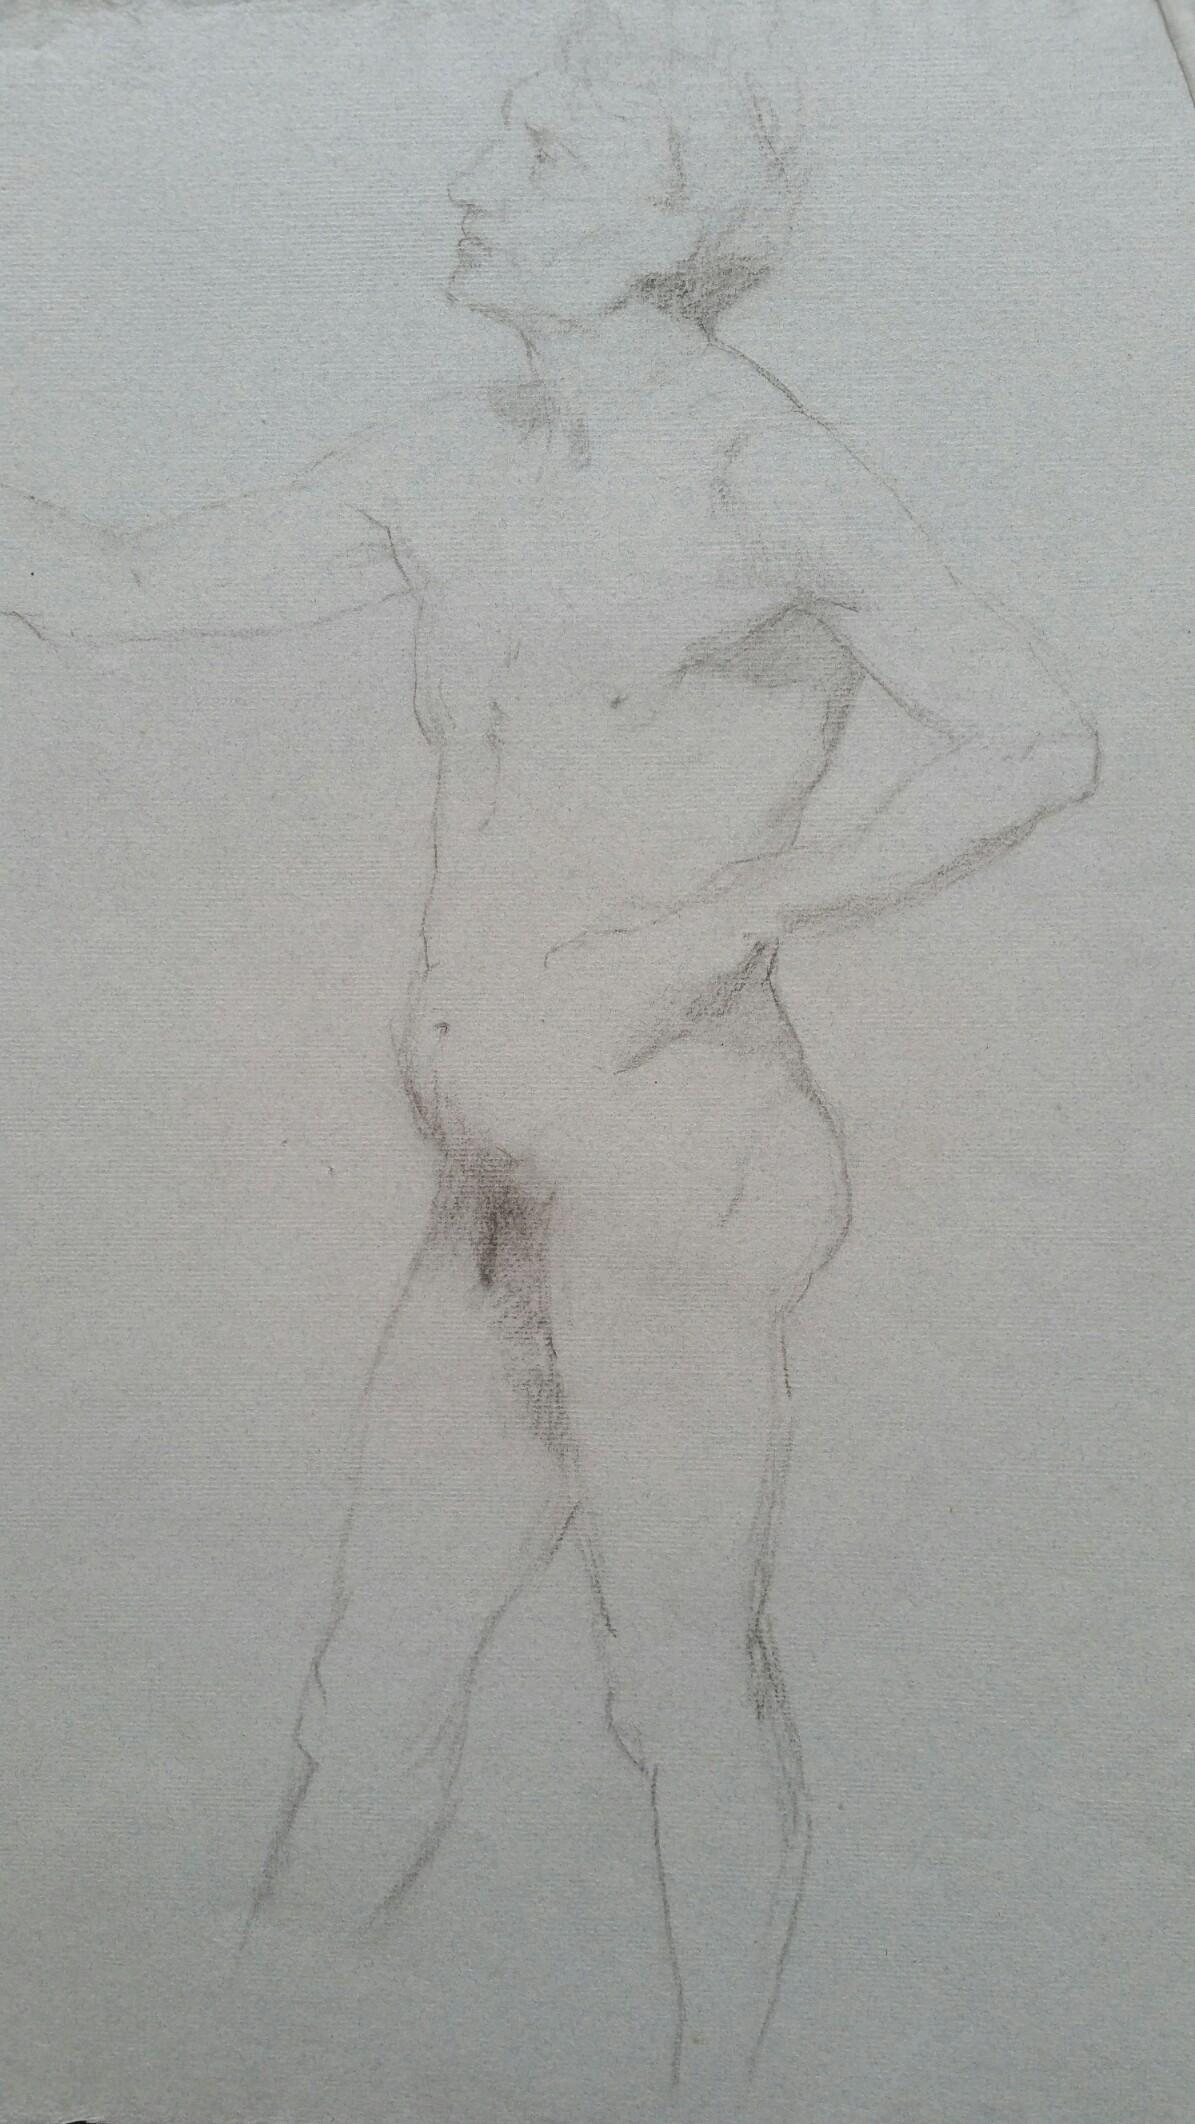 English Graphite Portrait Sketch of Male Nude, in Profile